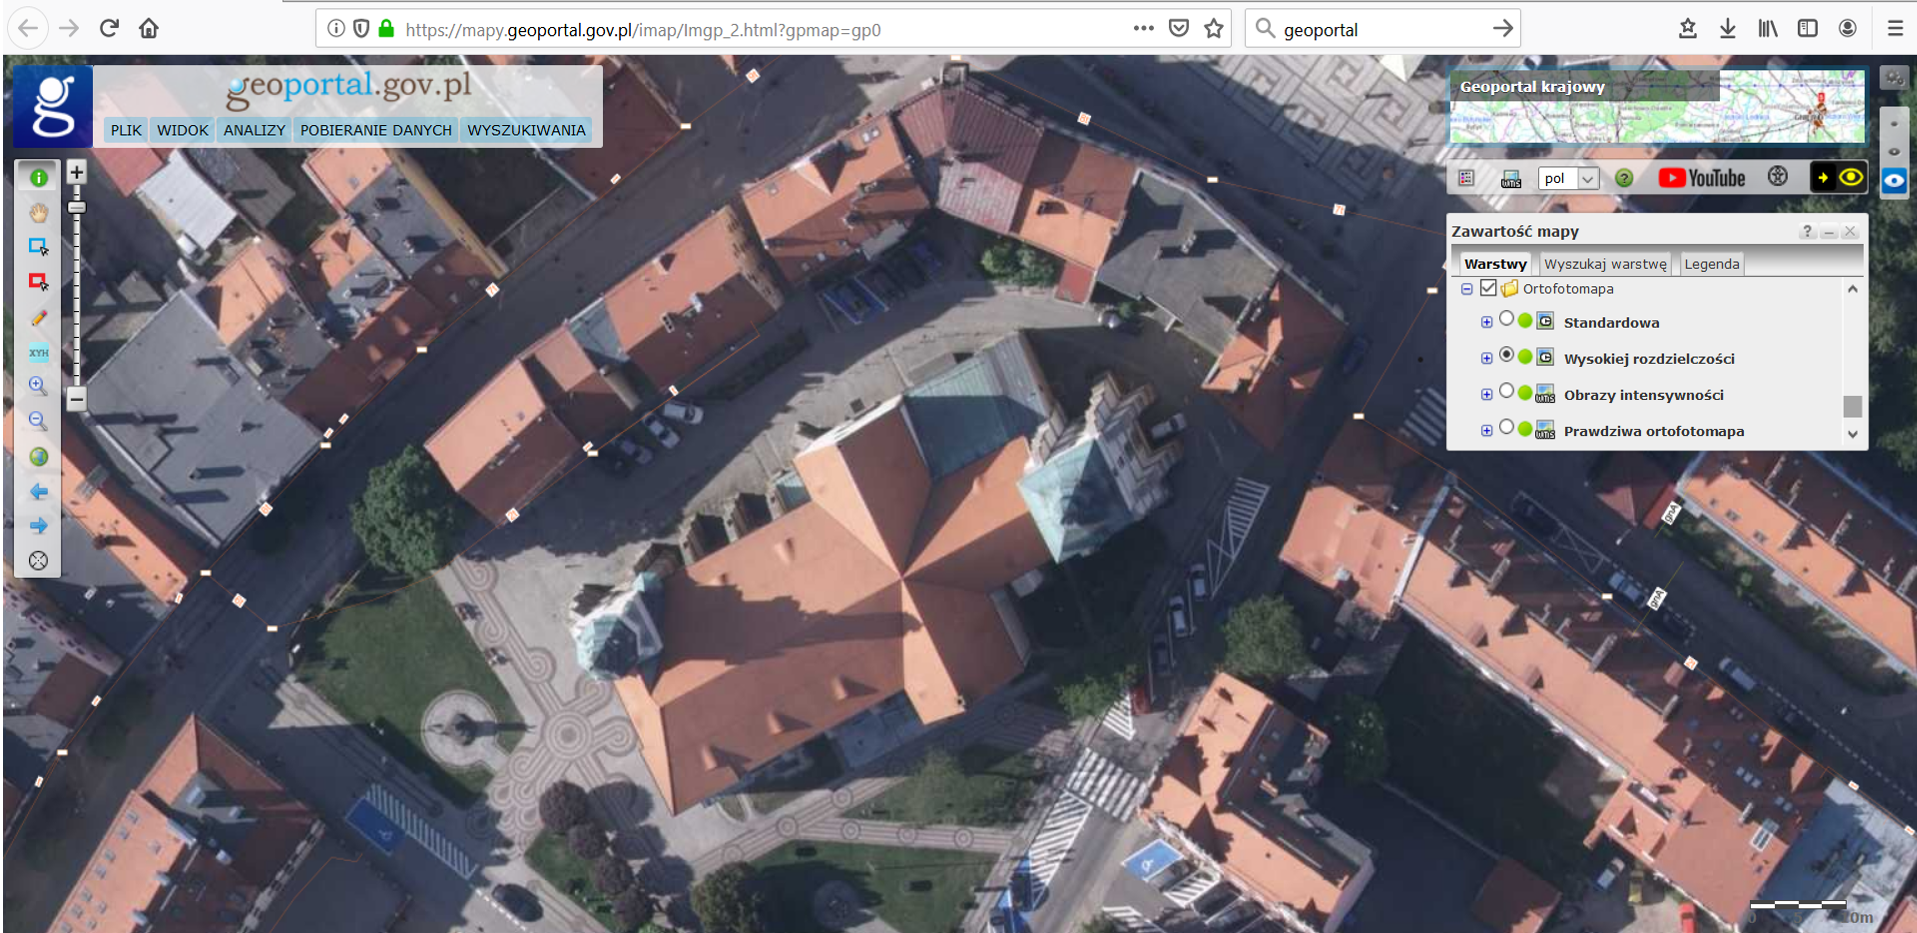 Ilustracja przedstawia zrzut ekranu z serwisu www.geoportal.gov.pl przedstawiający miasto Złotoryja w usłudze Ortofotomapa HR